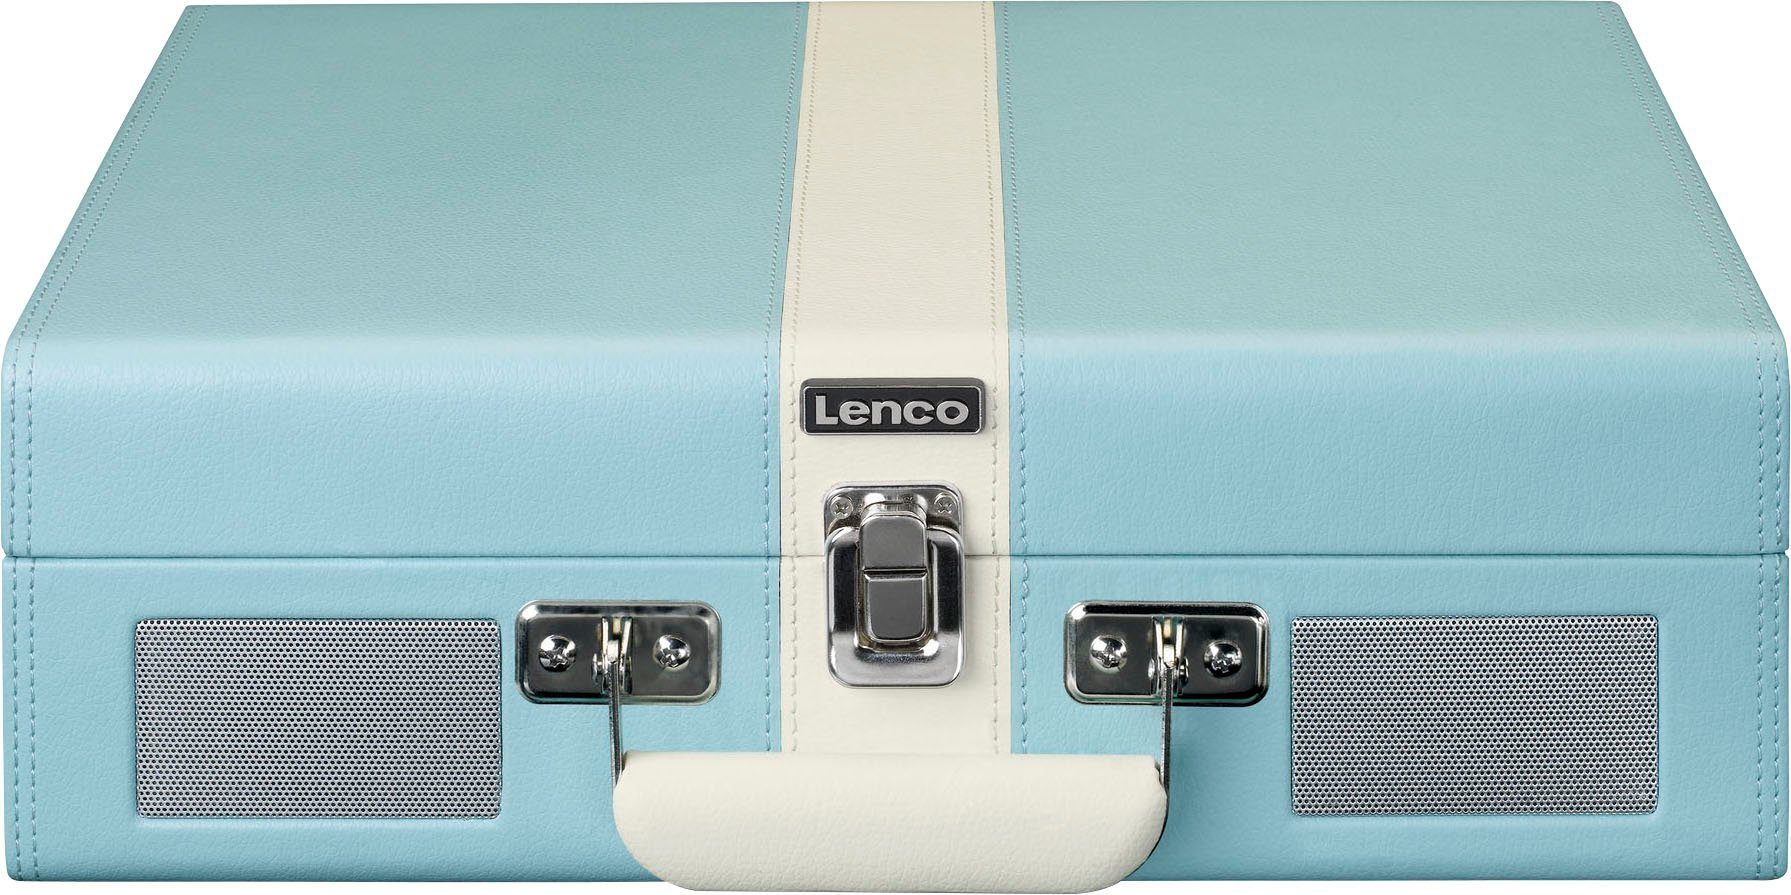 (Riemenantrieb) Blau-Weiß Lenco BT und Koffer-Plattenspieler Lsp. Plattenspieler mit eingebauten